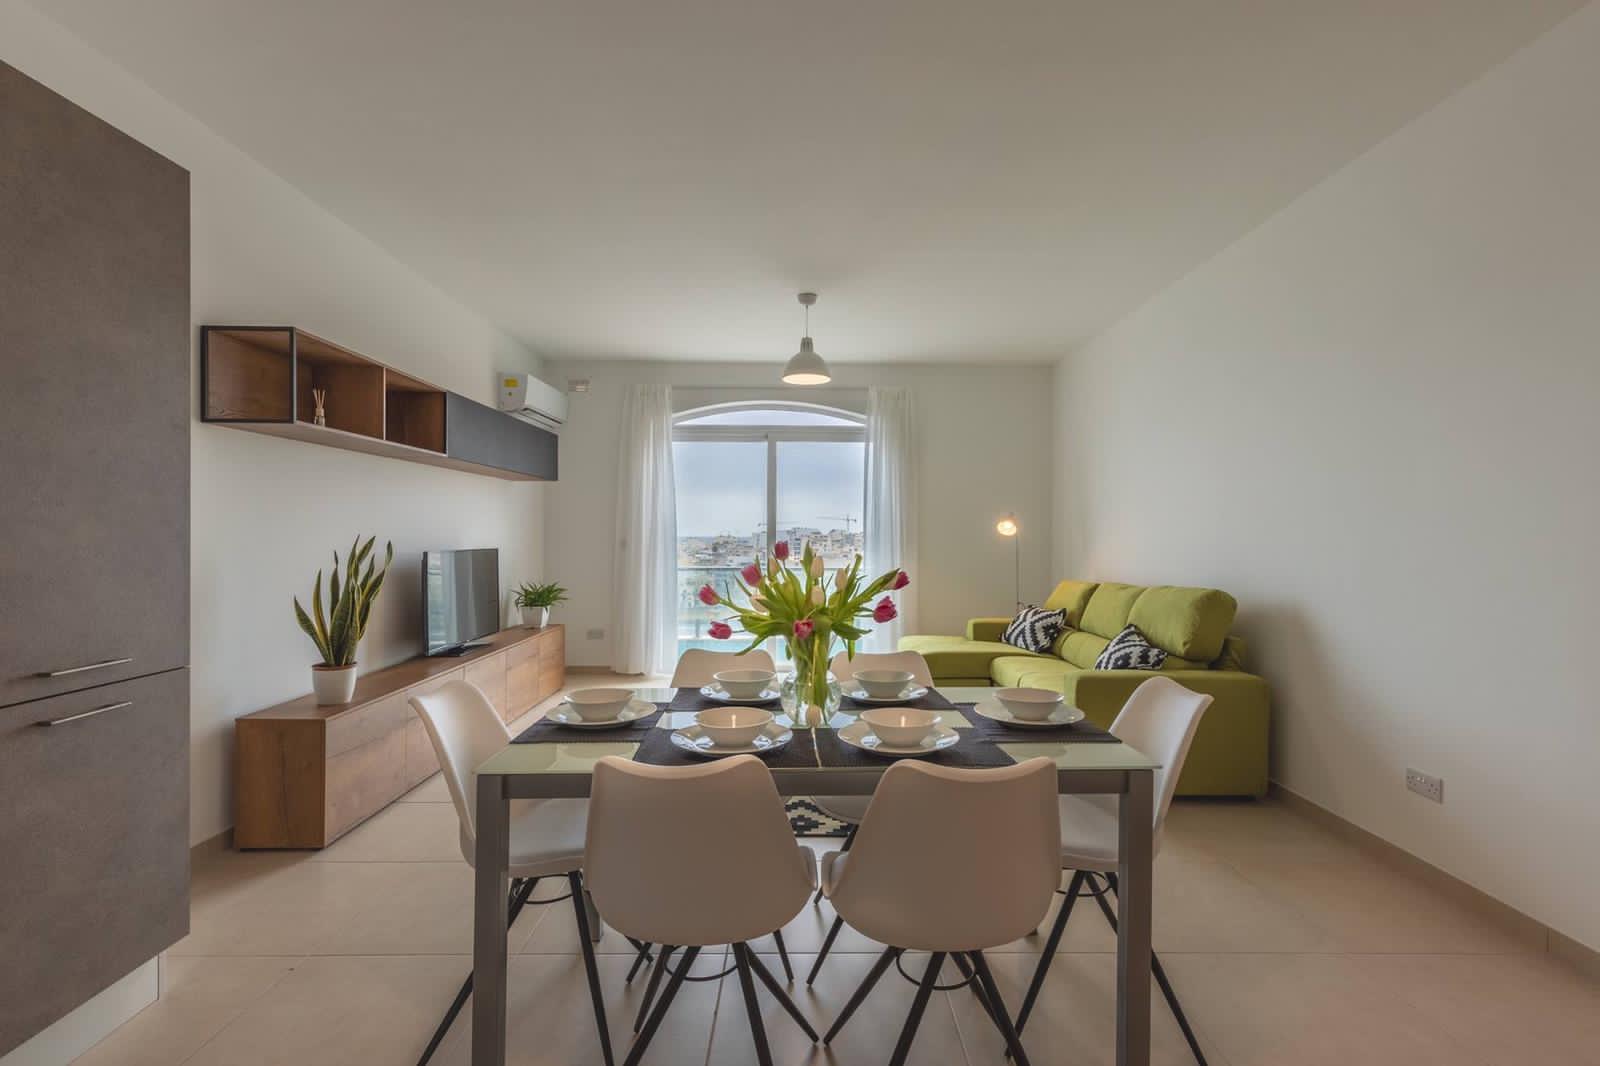 Arredamento zona Cucina appartamento Malta, progetto di CMC Arredi La torre